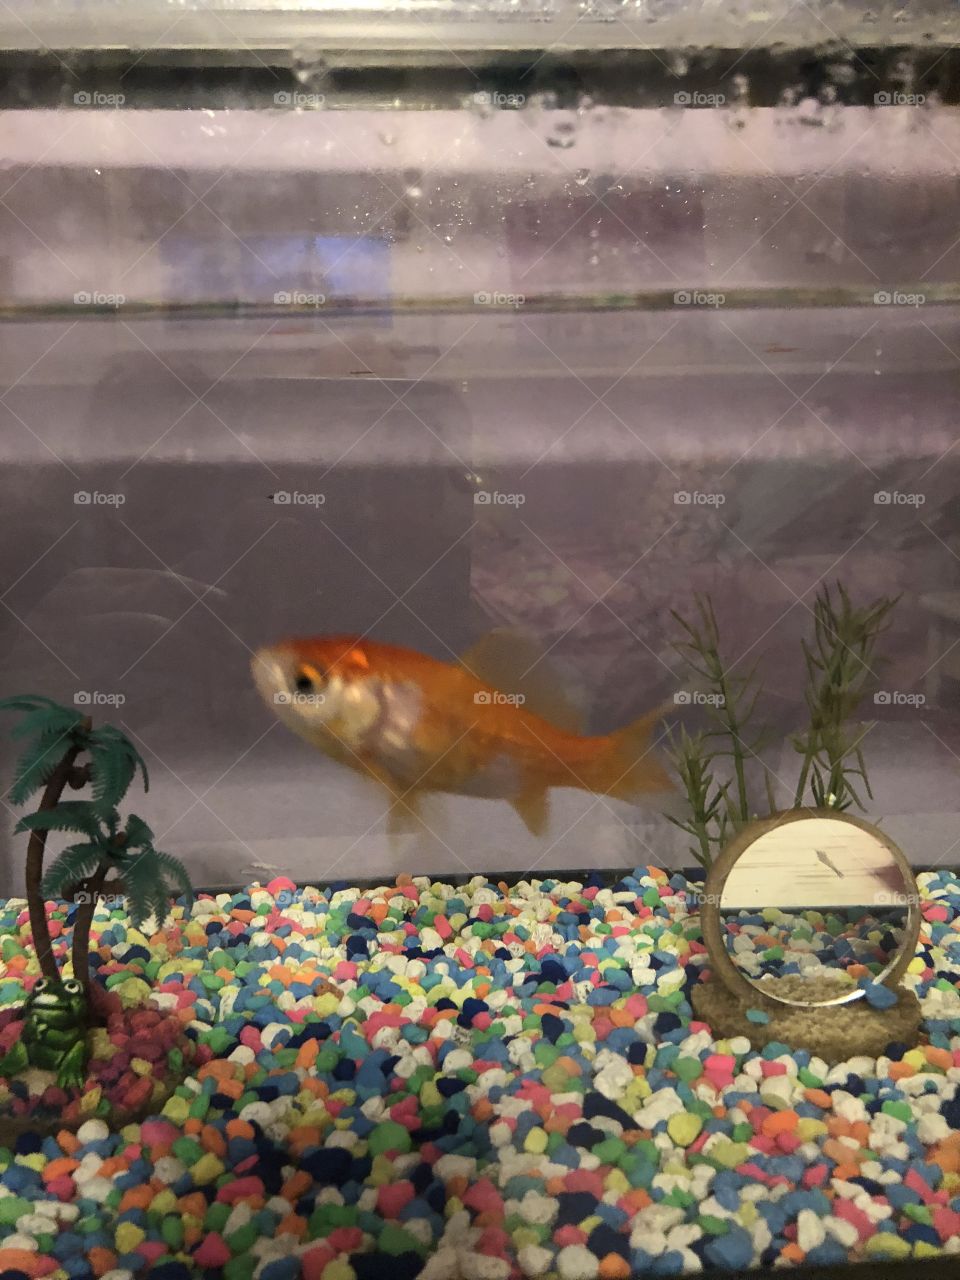 Goldfish that keeps growing!